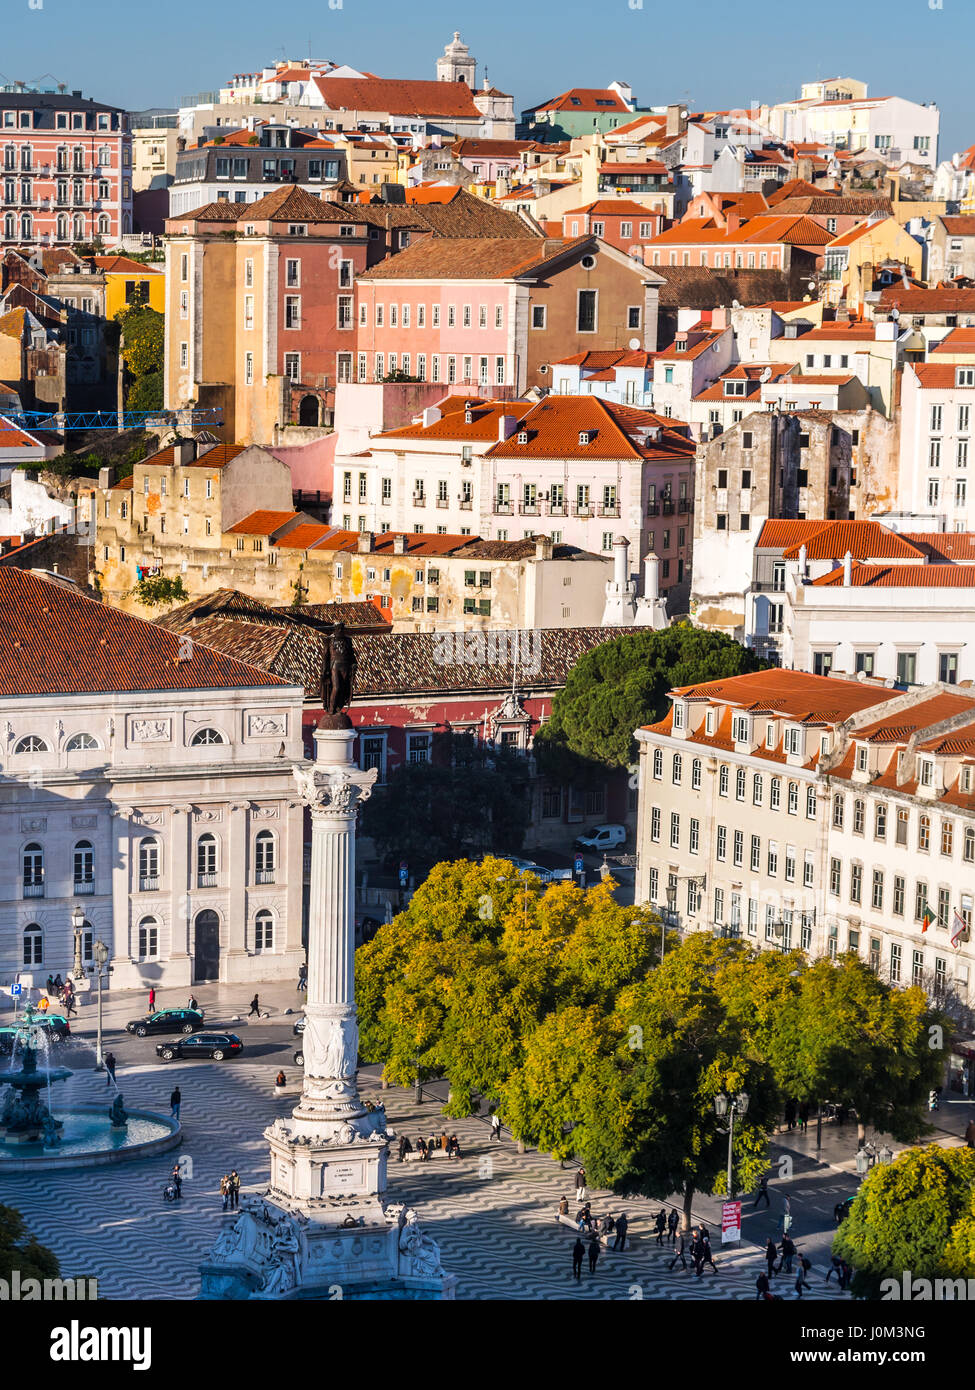 Lisbona, Portogallo - 10 gennaio 2017: Colonna di Pedro IV sulla piazza Rossio (Piazza Pedro IV) a Lisbona come si vede dal Elevador da Santa Justa viewpoint. Foto Stock